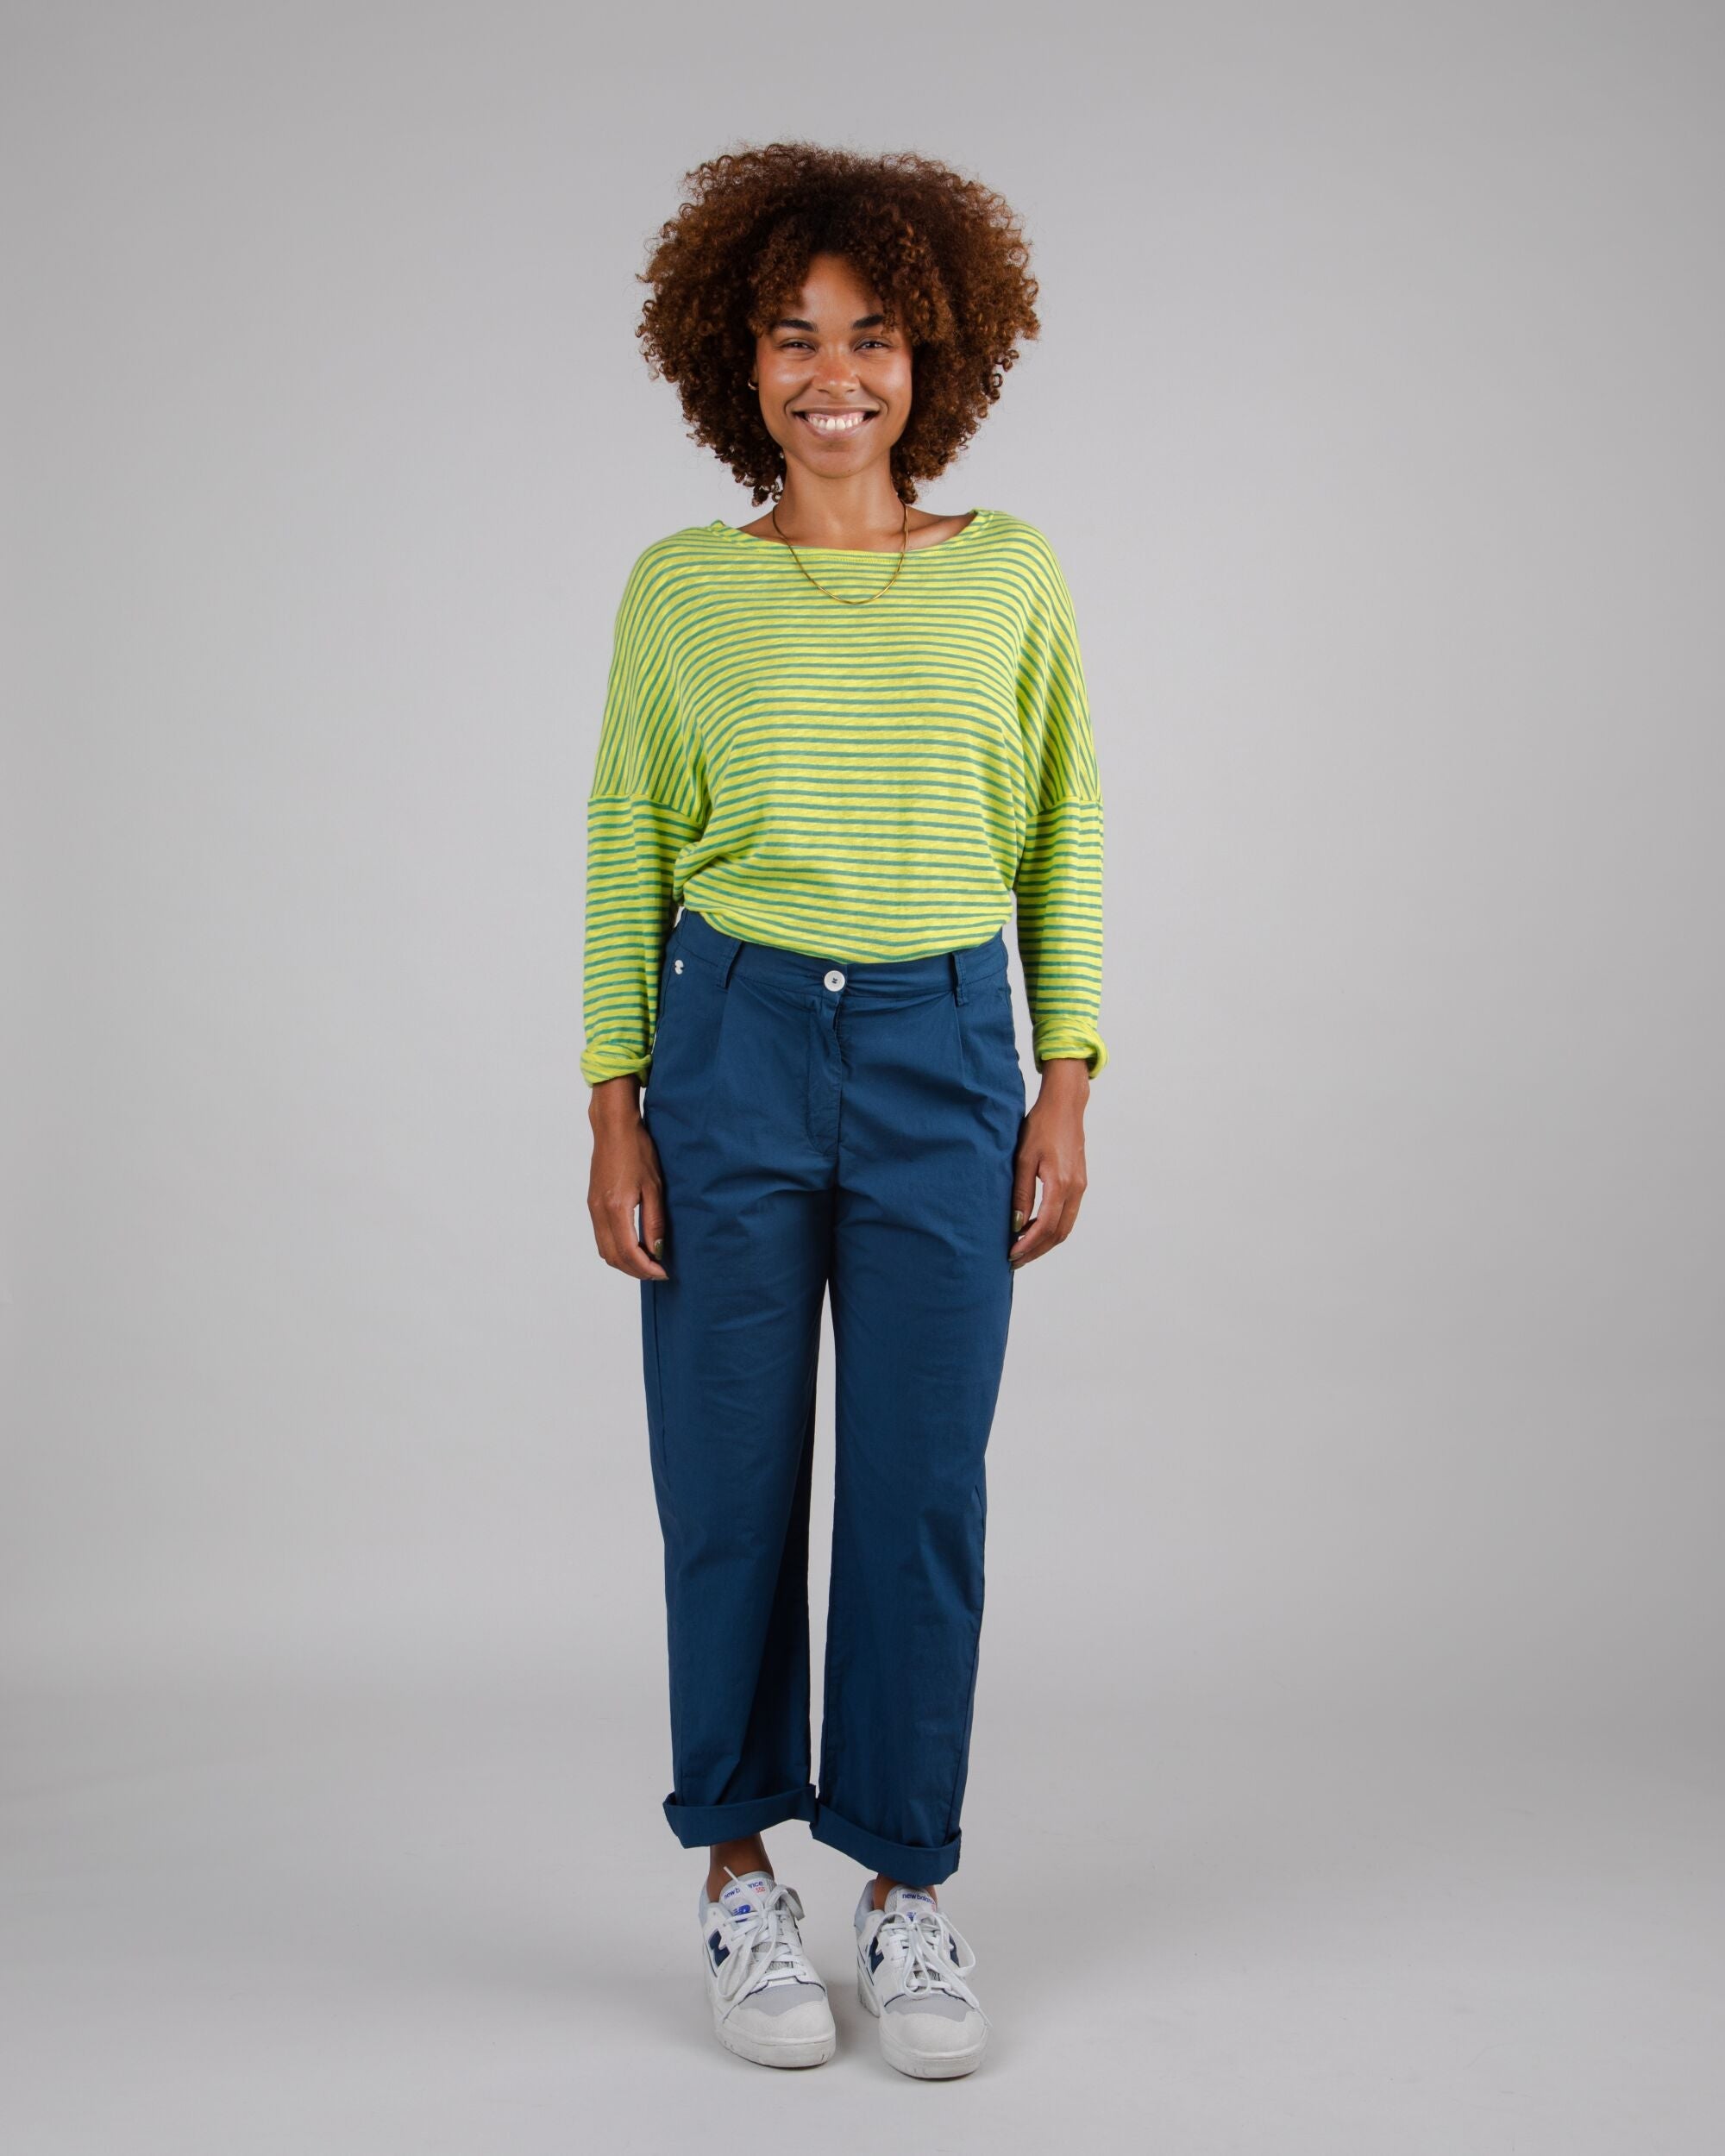 Sweatshirt Stripes Fine Knit Cotton en Lime en coton biologique par Brava Fabrics